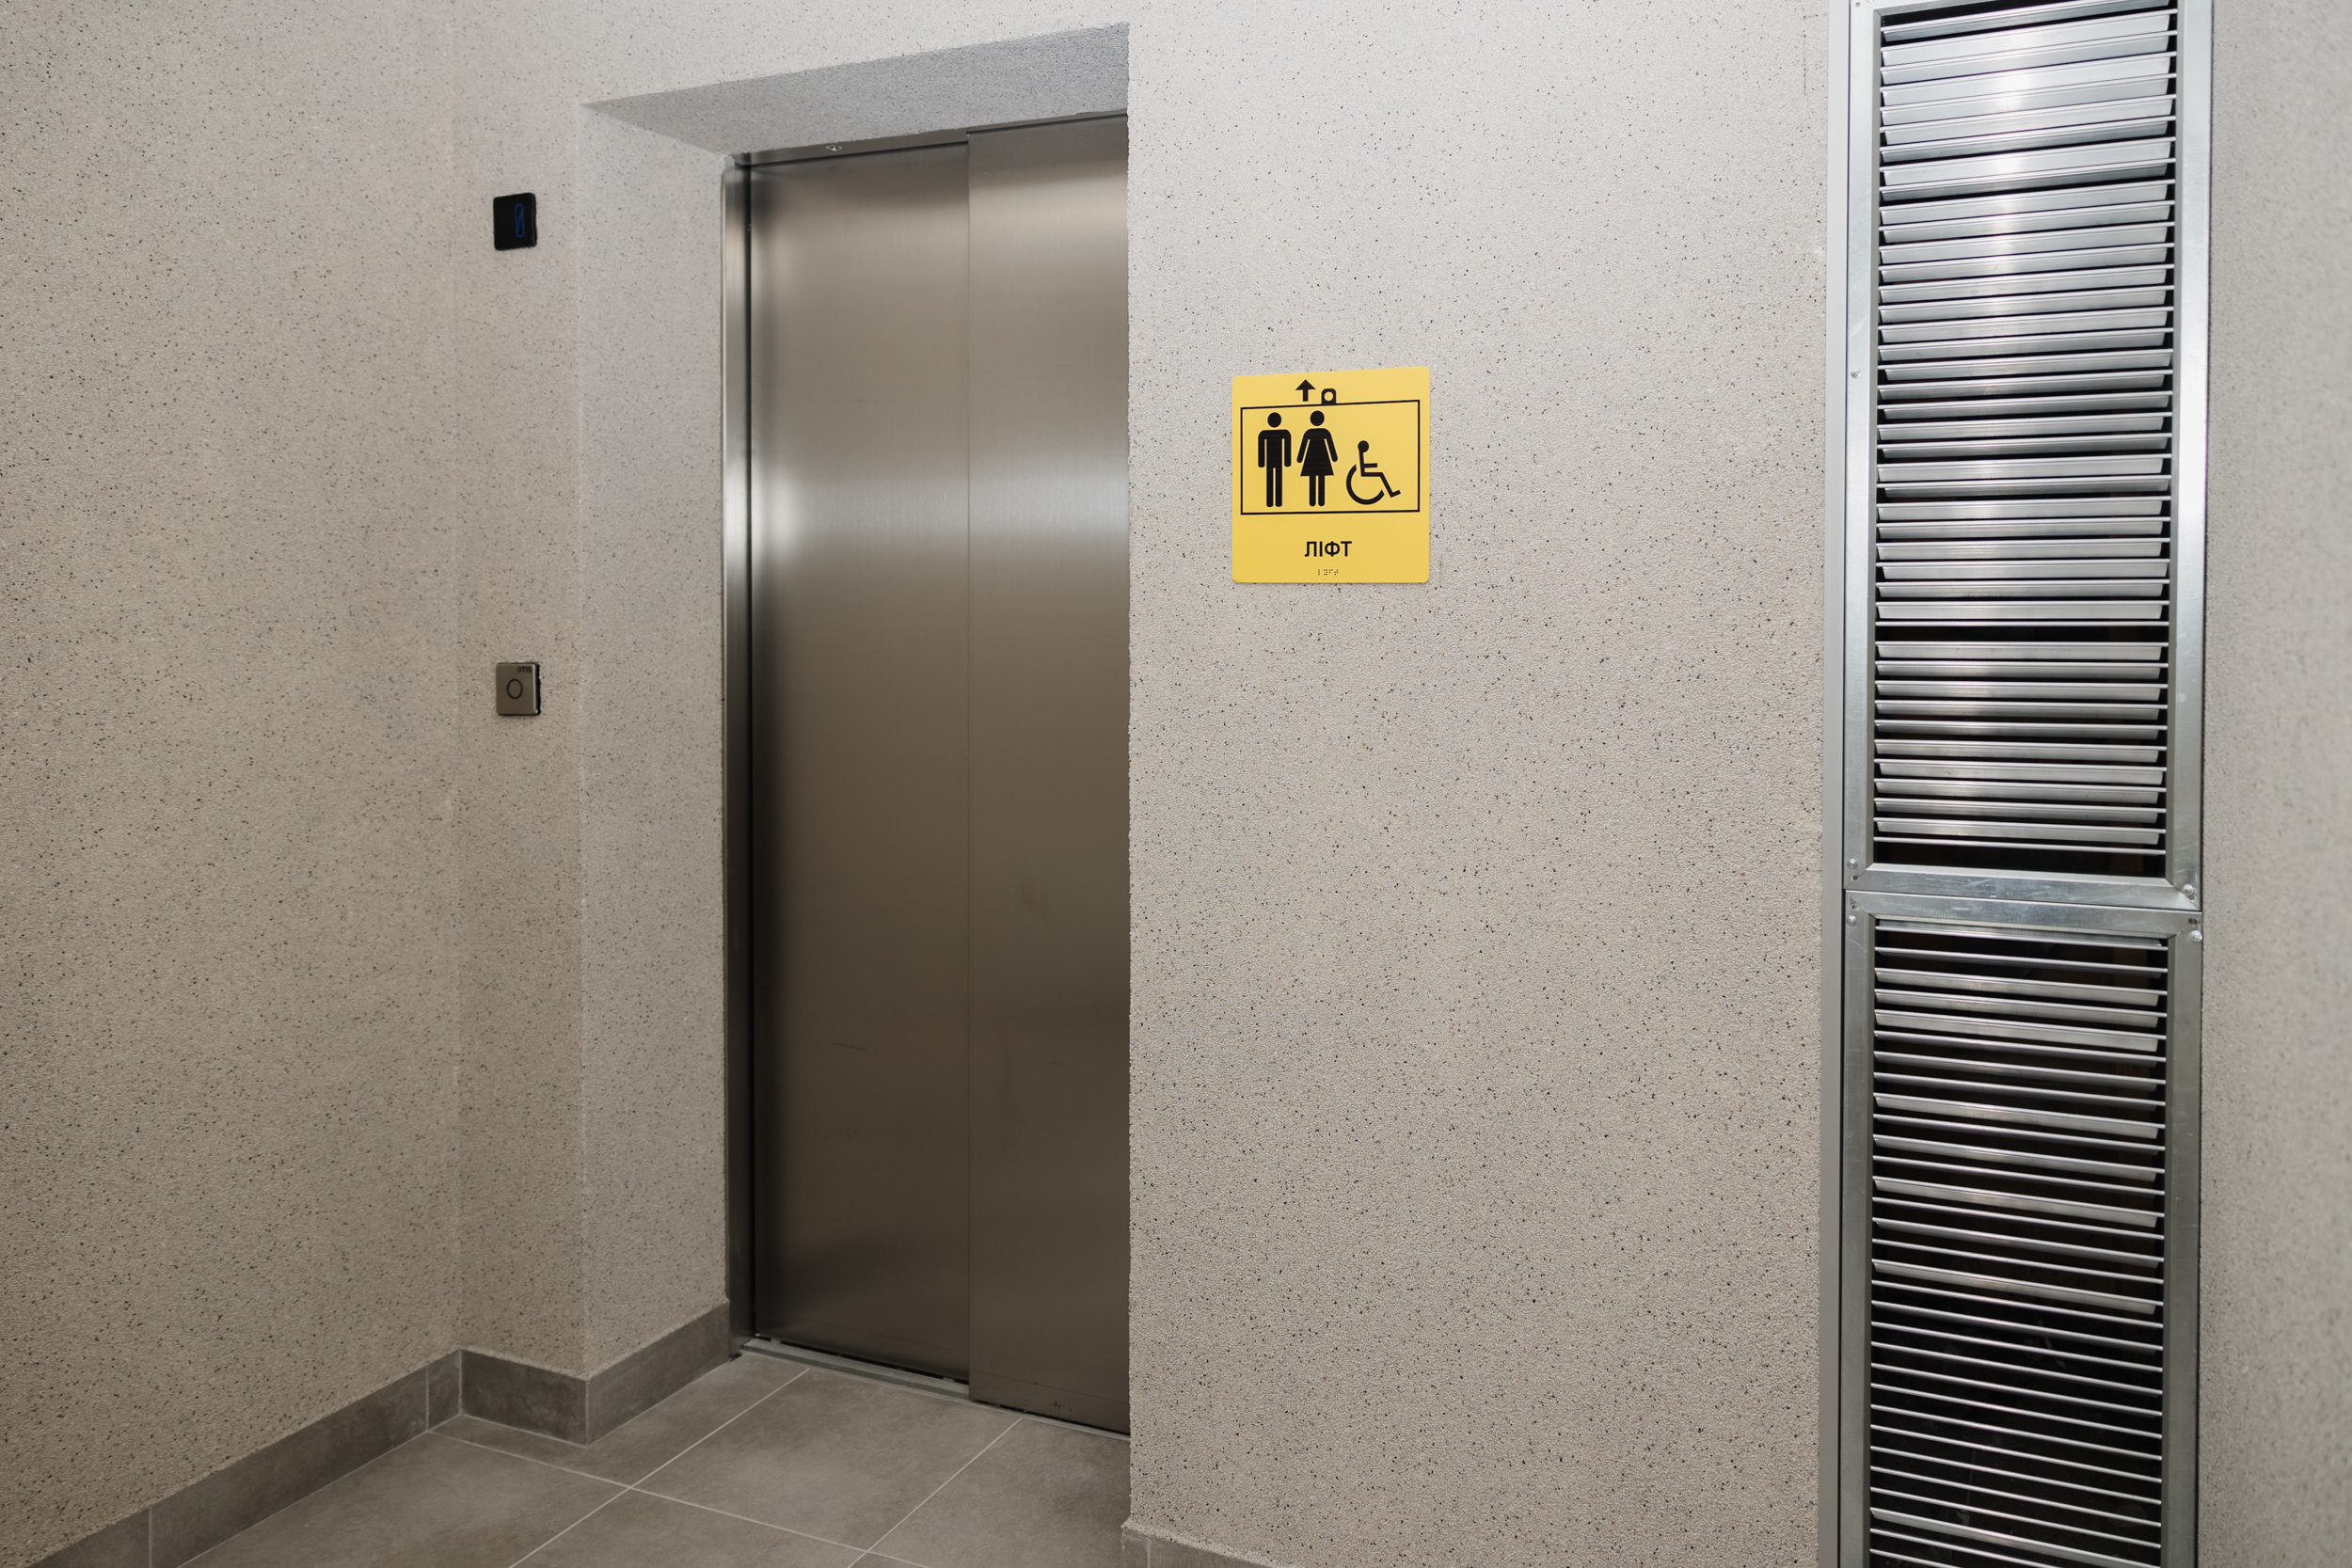  Ліфт, яким обладнана будівля медзакладу 